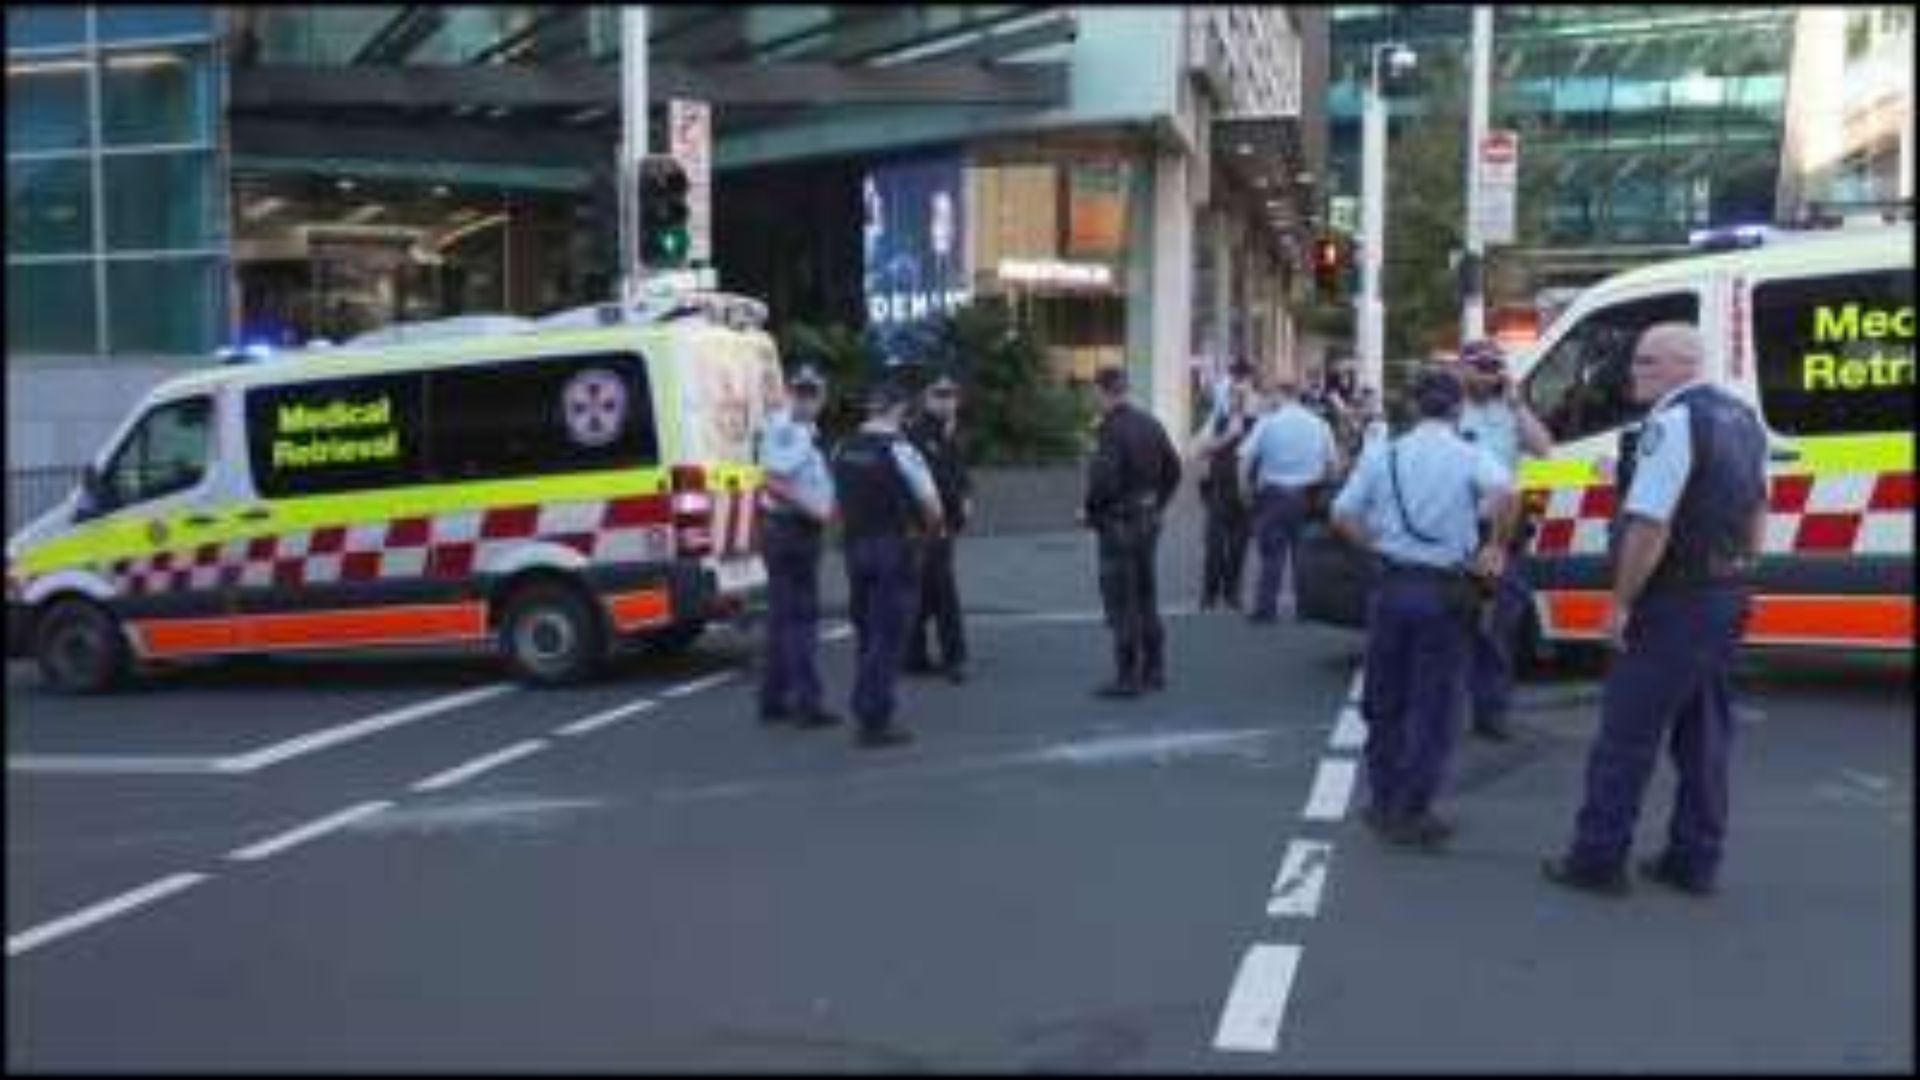 Australia: 6 die in a random shooting-stabbing incident in Sydney, several injured